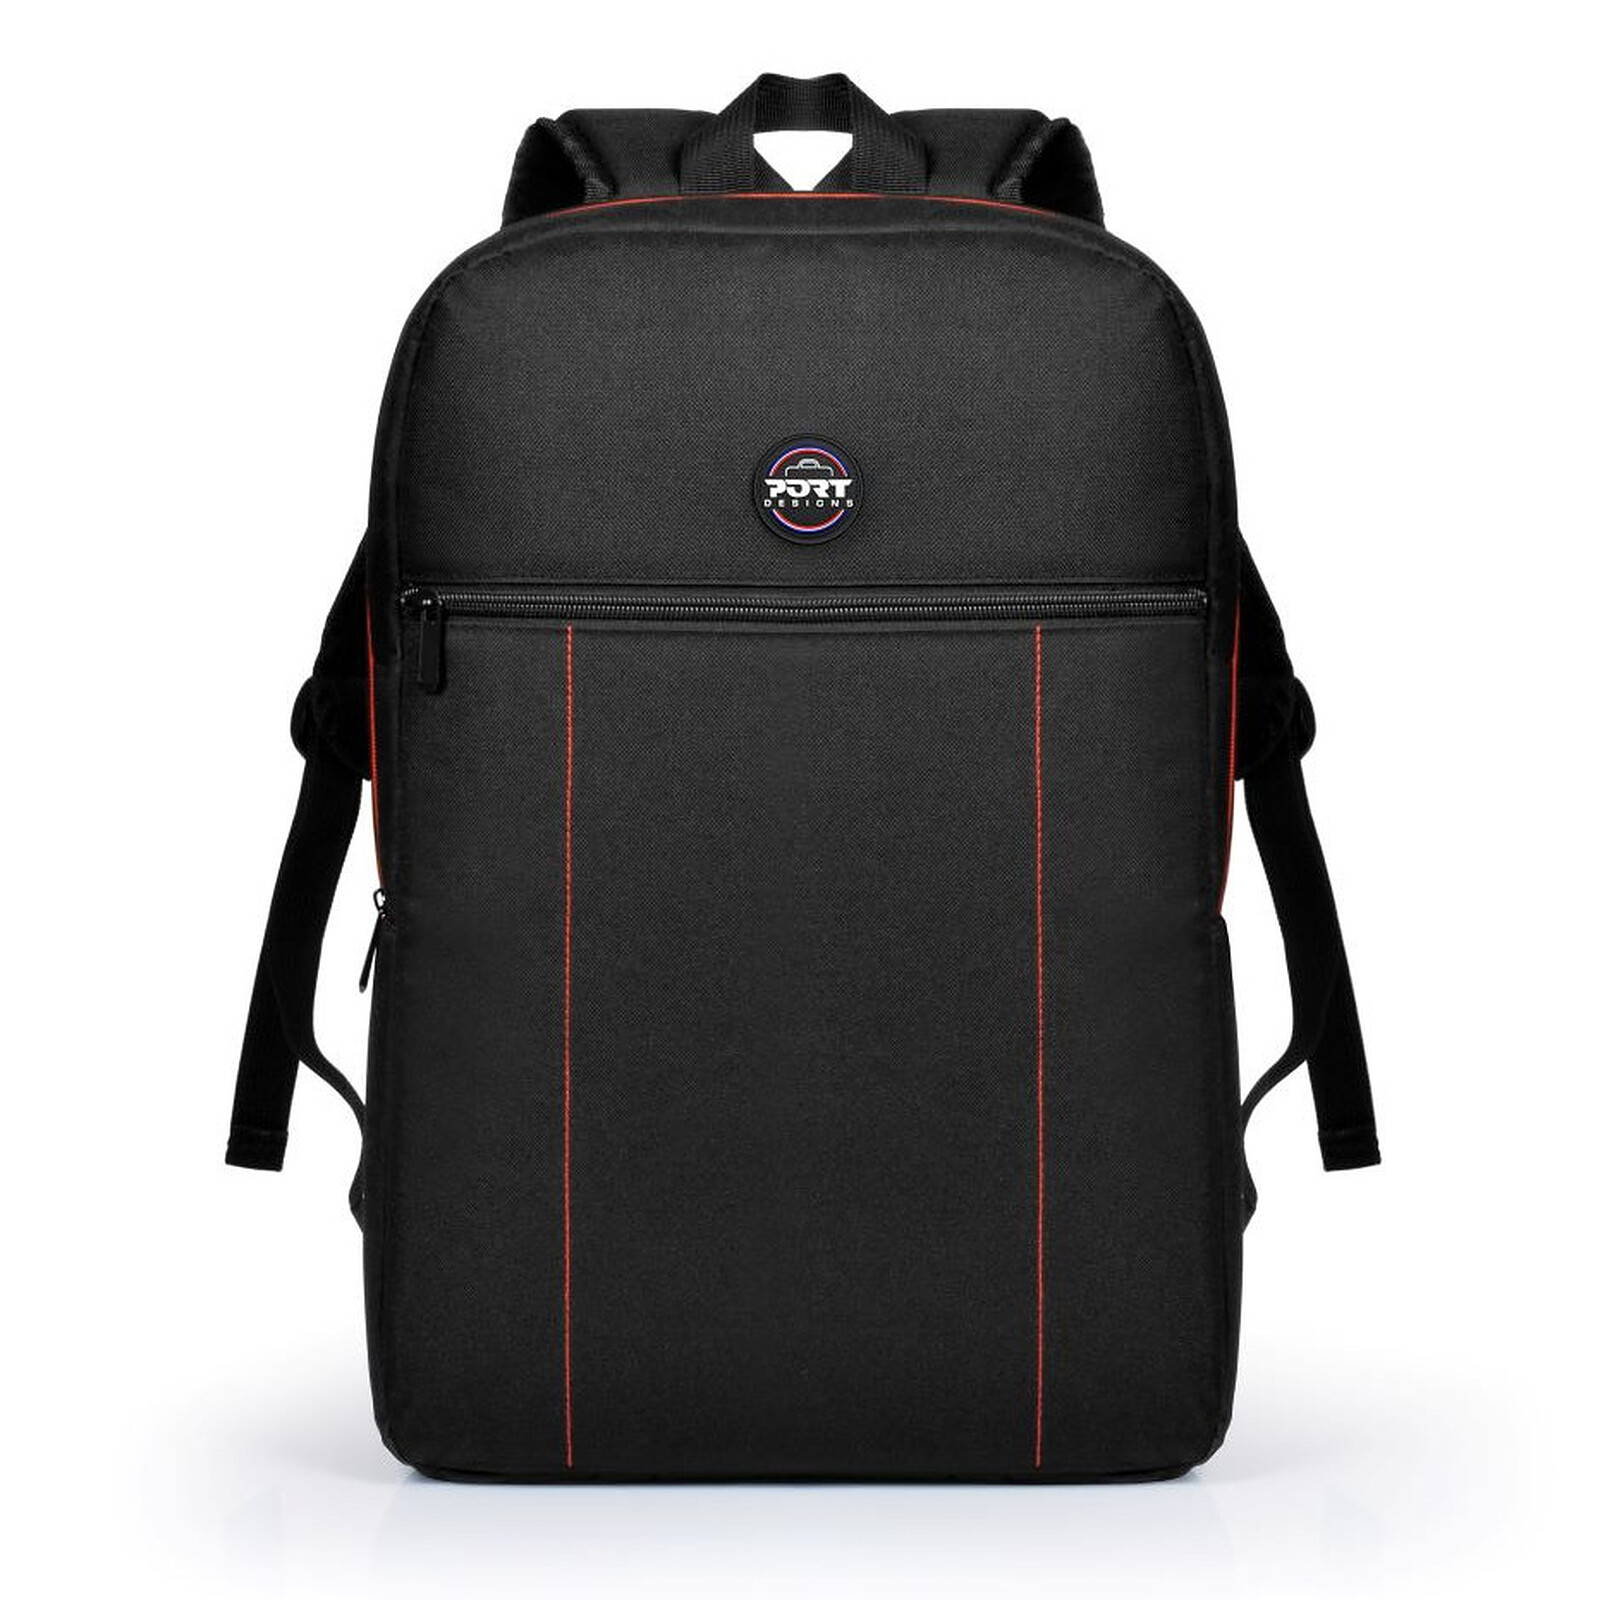 PORT Designs Premium - Sac à dos pour ordinateur portable 15,6 +